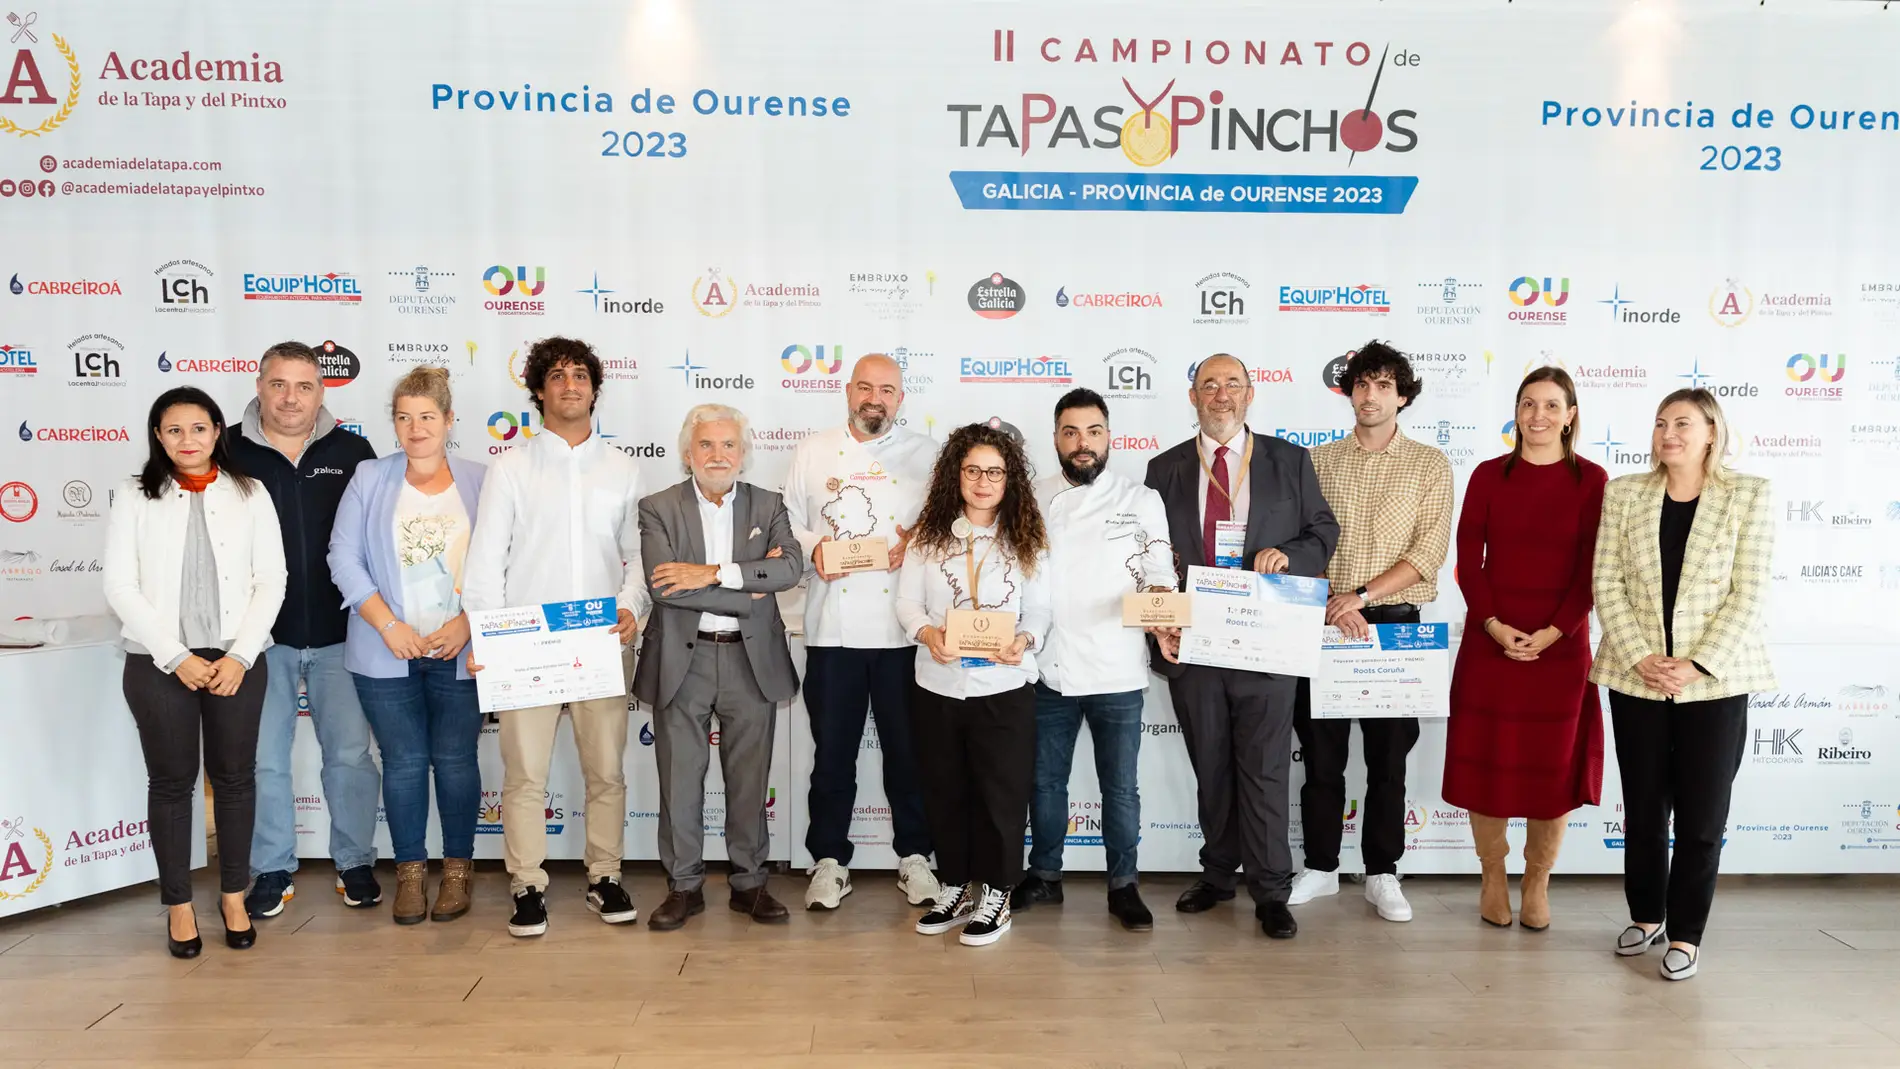 Sheila Barbeito gaña o II Campionato de Tapas e Pinchos de Galicia 